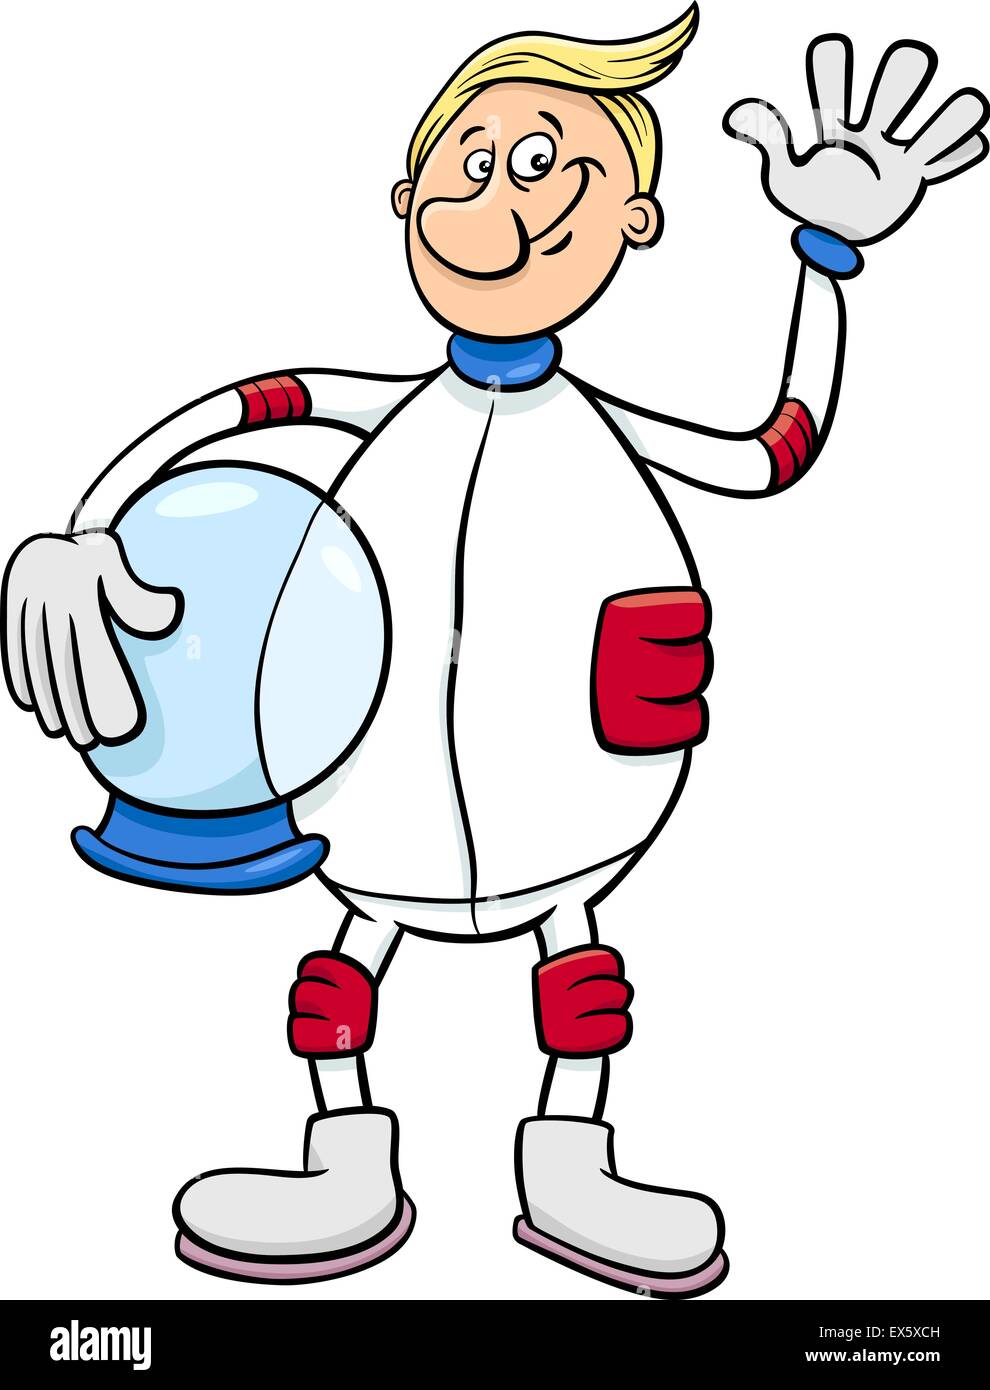 Cartoon-Illustration von Spaceman oder Astronauten im Raumanzug Stock Vektor